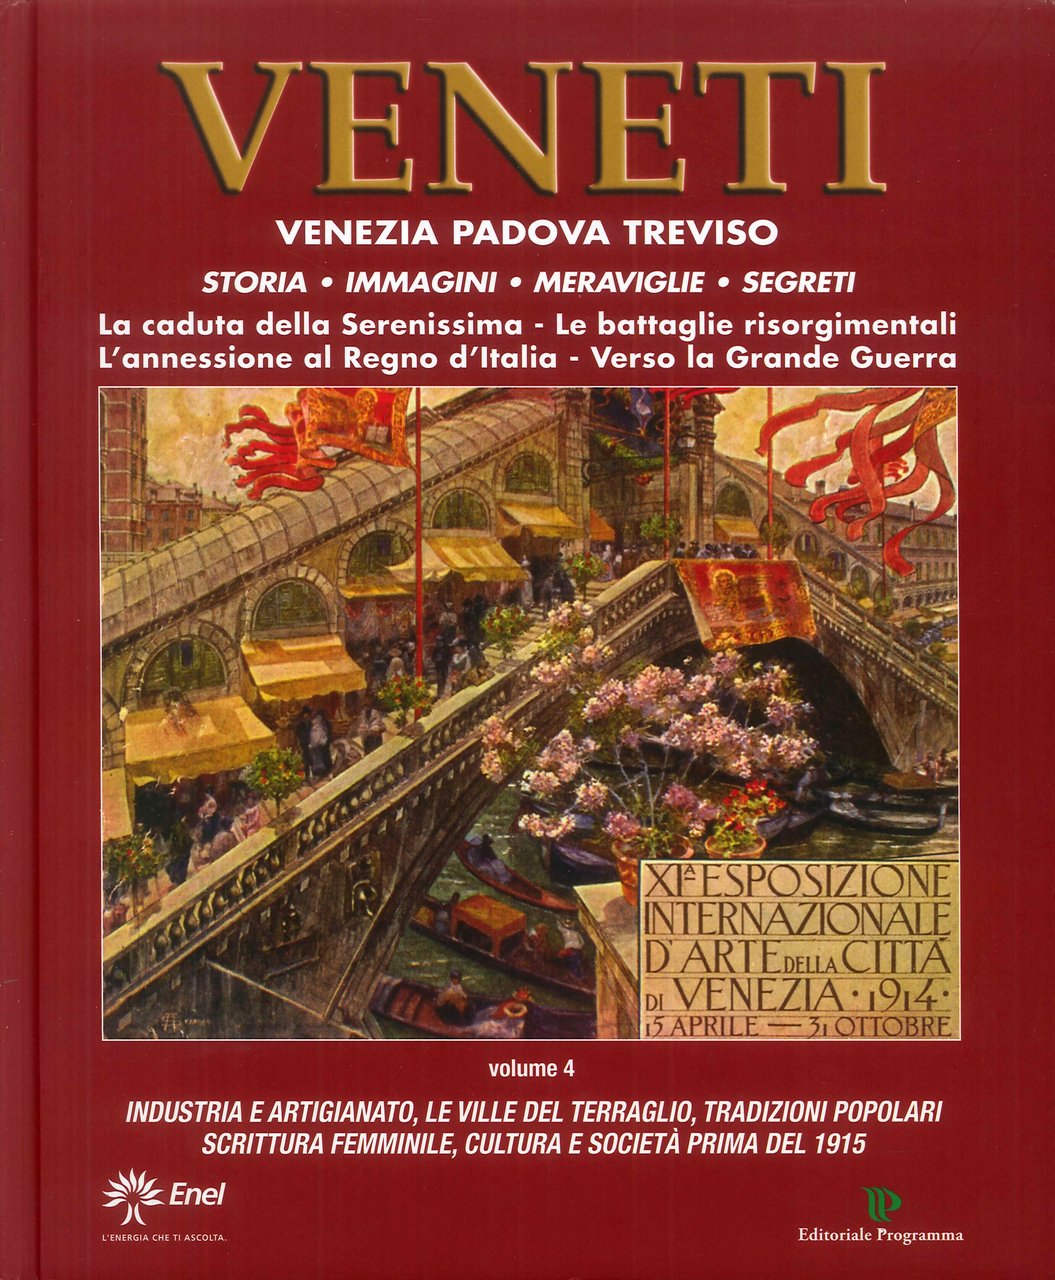 Veneti. Venezia Padova Treviso. Vol. 4, Treviso, Editoriale Programma, 2018